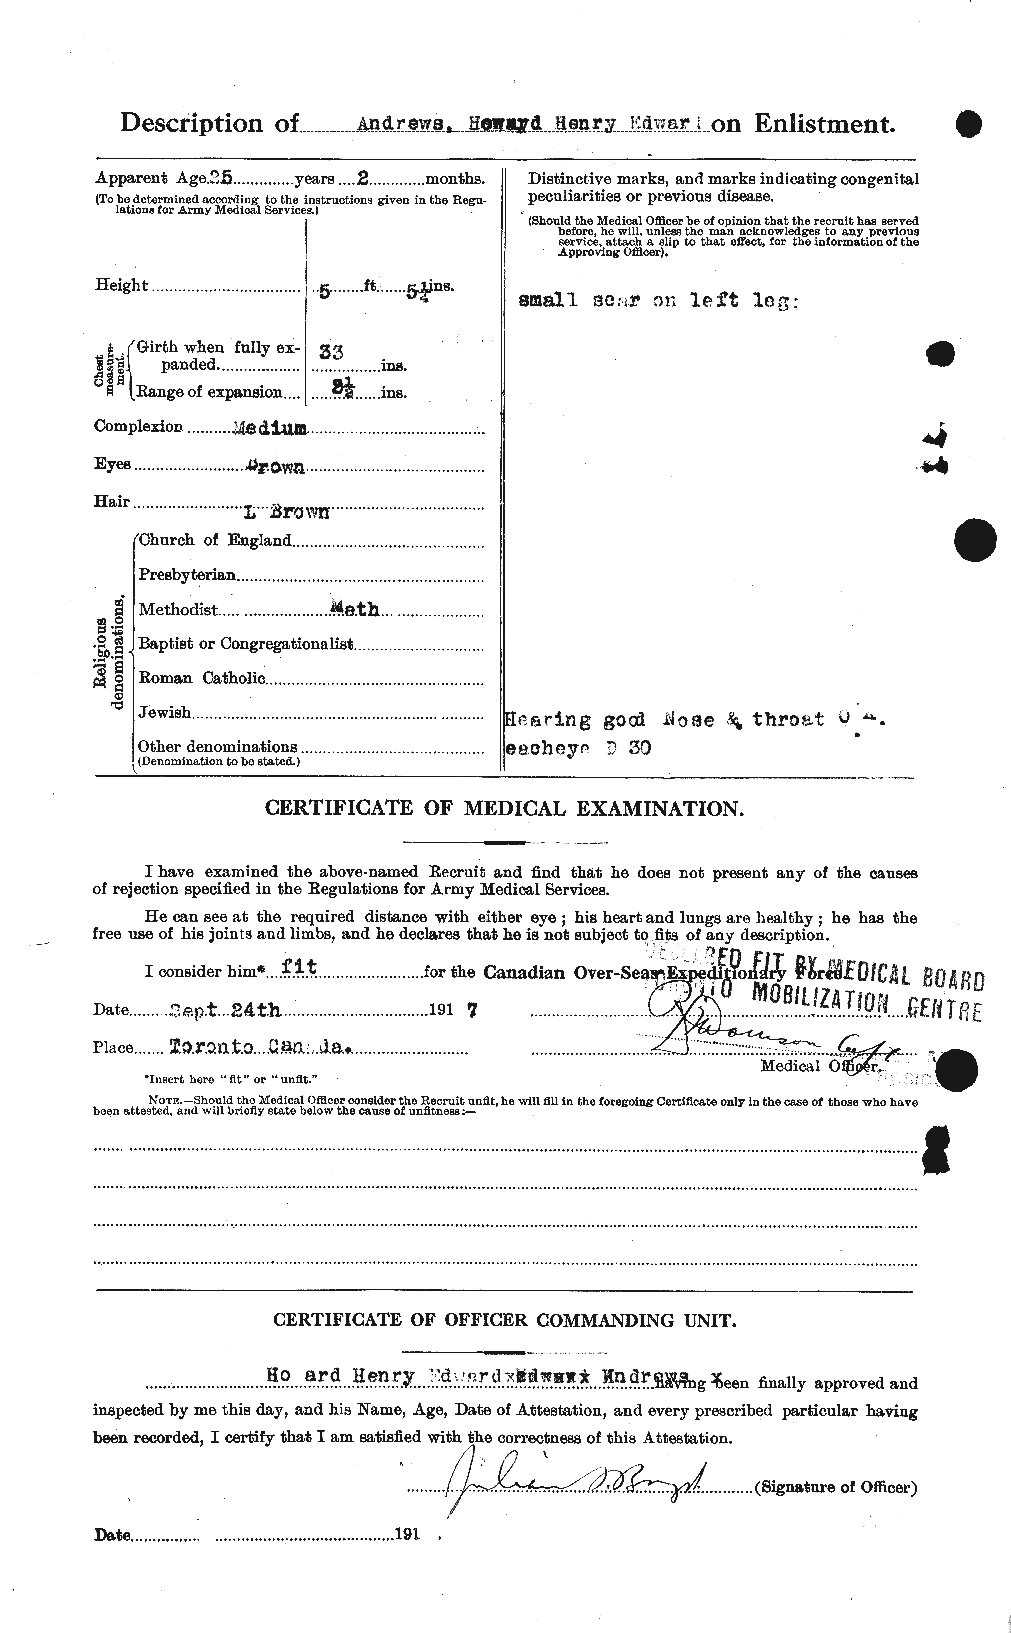 Dossiers du Personnel de la Première Guerre mondiale - CEC 210255b